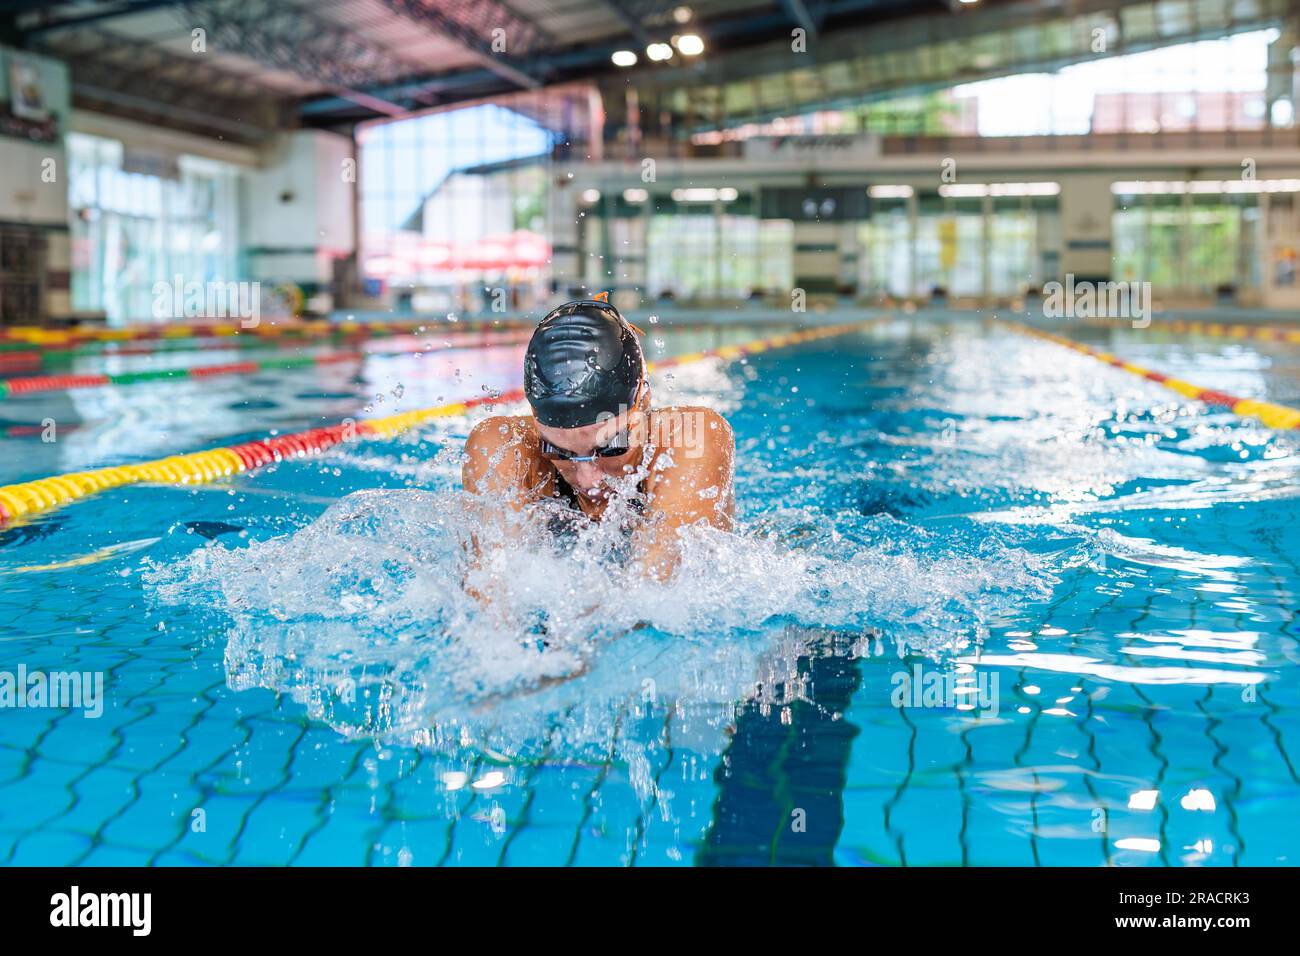 Atleta femminile che nuota in stile senstroke nella corsia della piscina, che si fa strada, si immerge e si solleva dall'acqua per respirare. Foto Stock